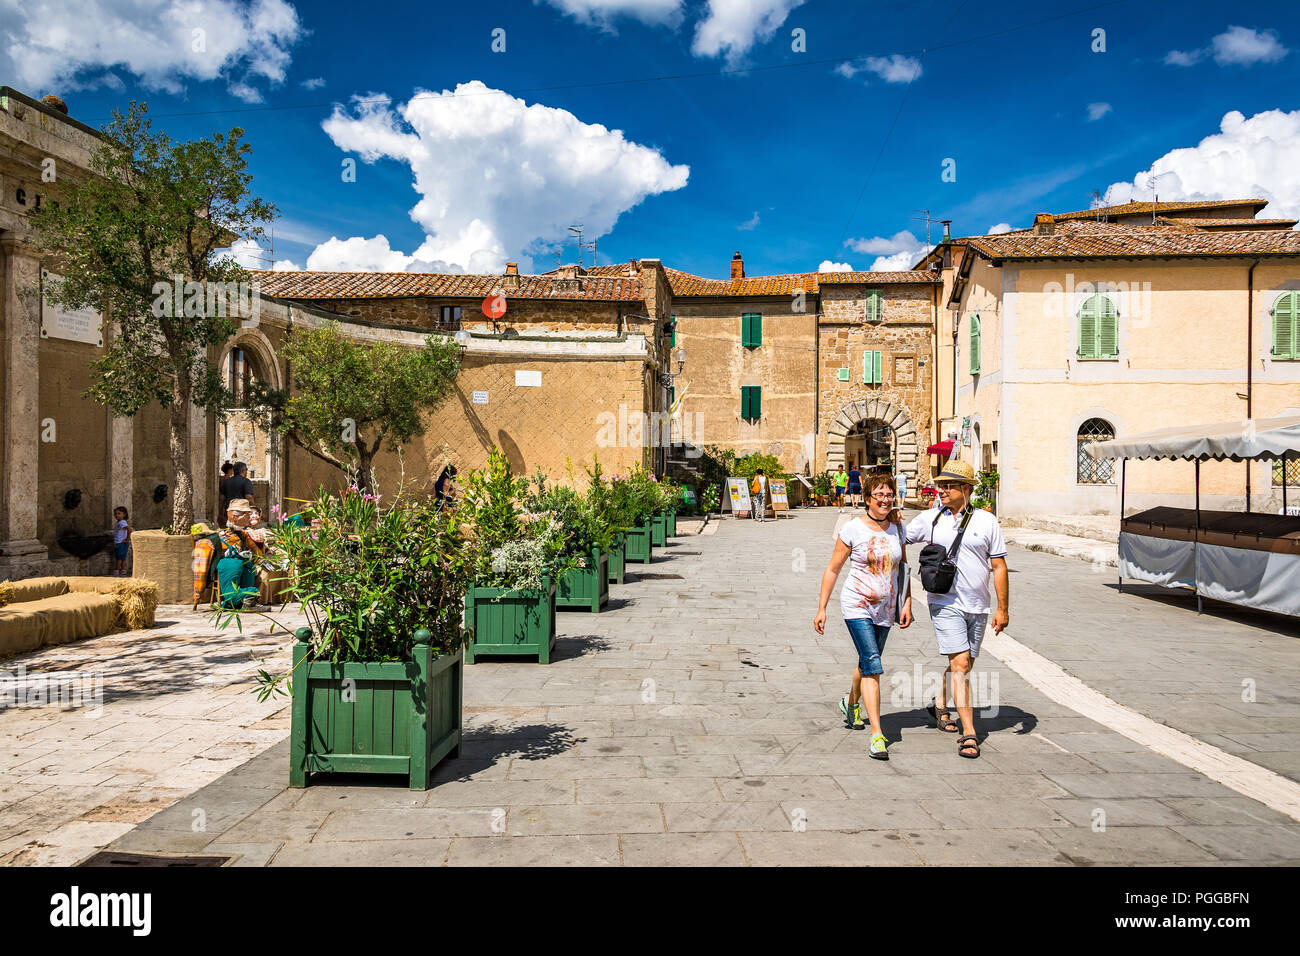 Sorano è una città della provincia di Grosseto, nel sud della Toscana. E' un'antica cittadina collinare medievale che si affaccia su un tufo di pietra sul fiume Lente. Foto Stock